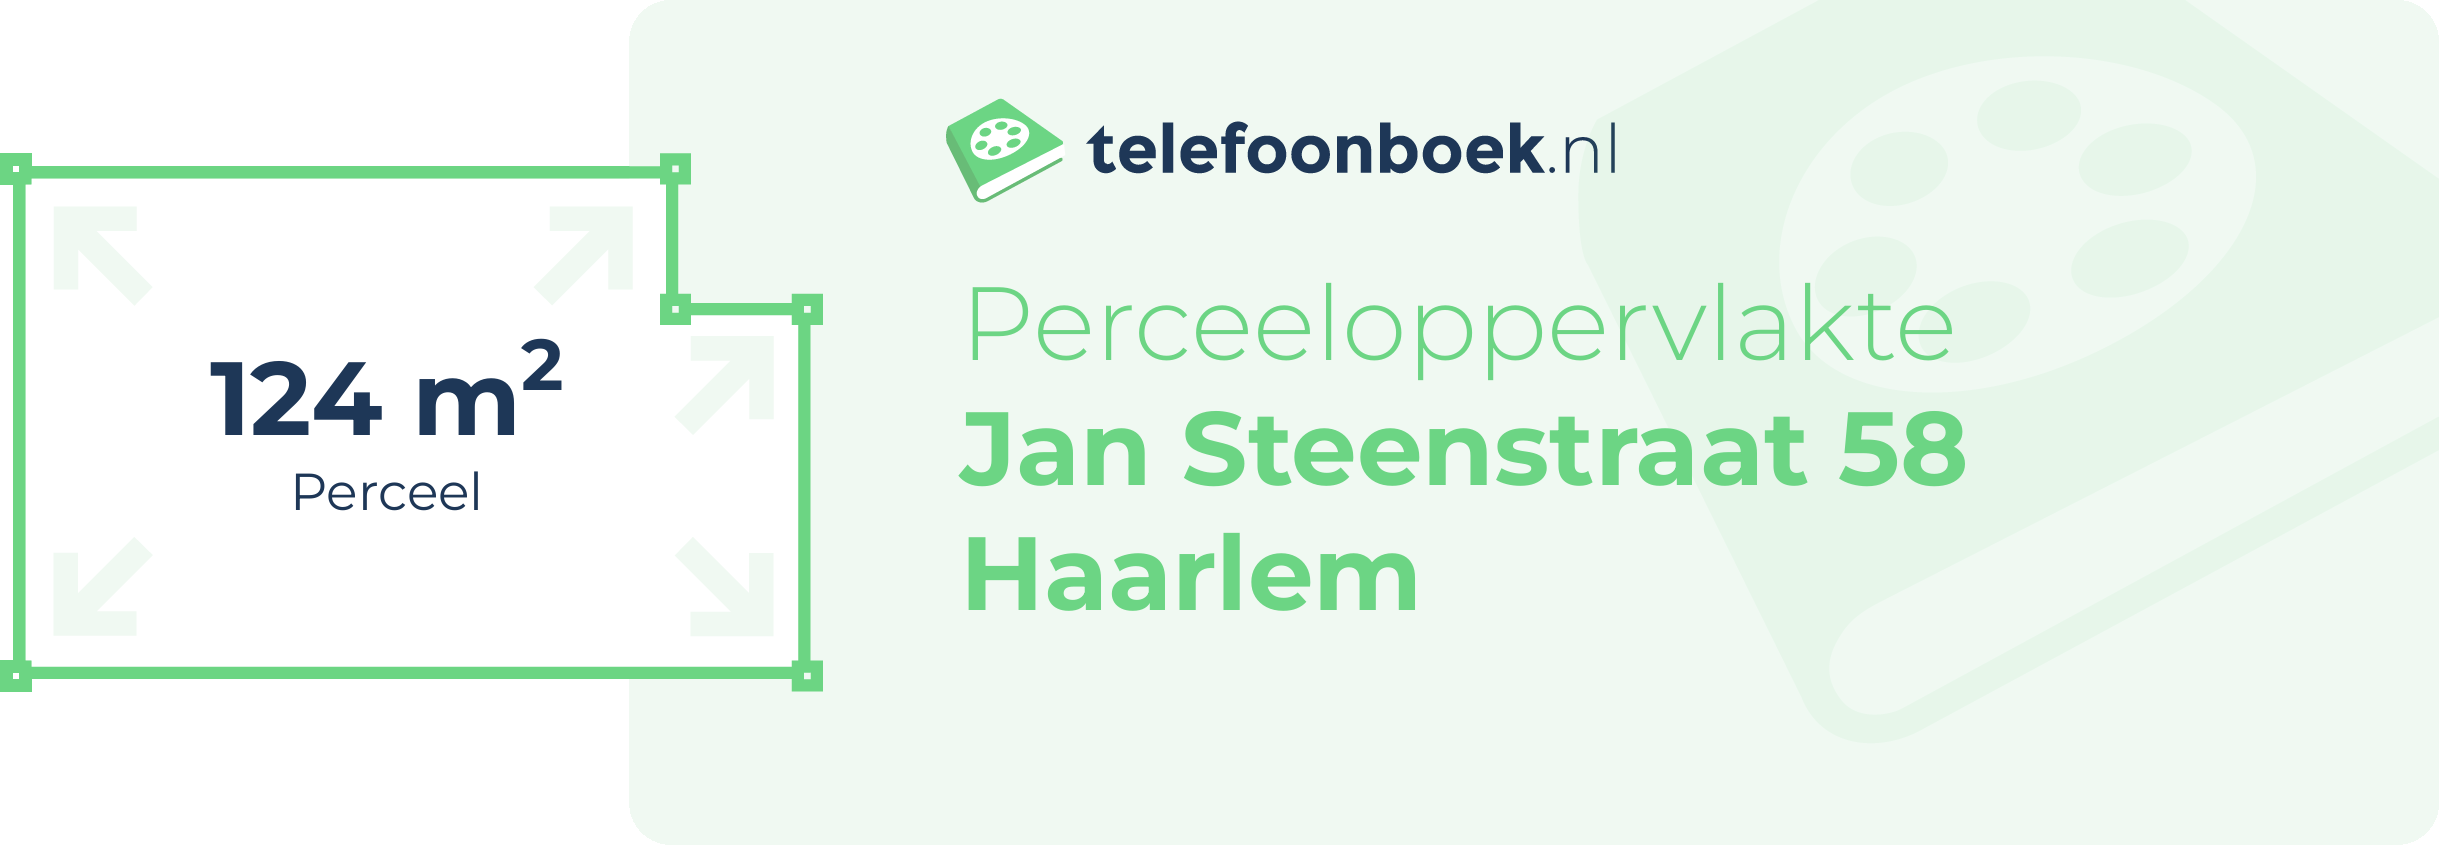 Perceeloppervlakte Jan Steenstraat 58 Haarlem